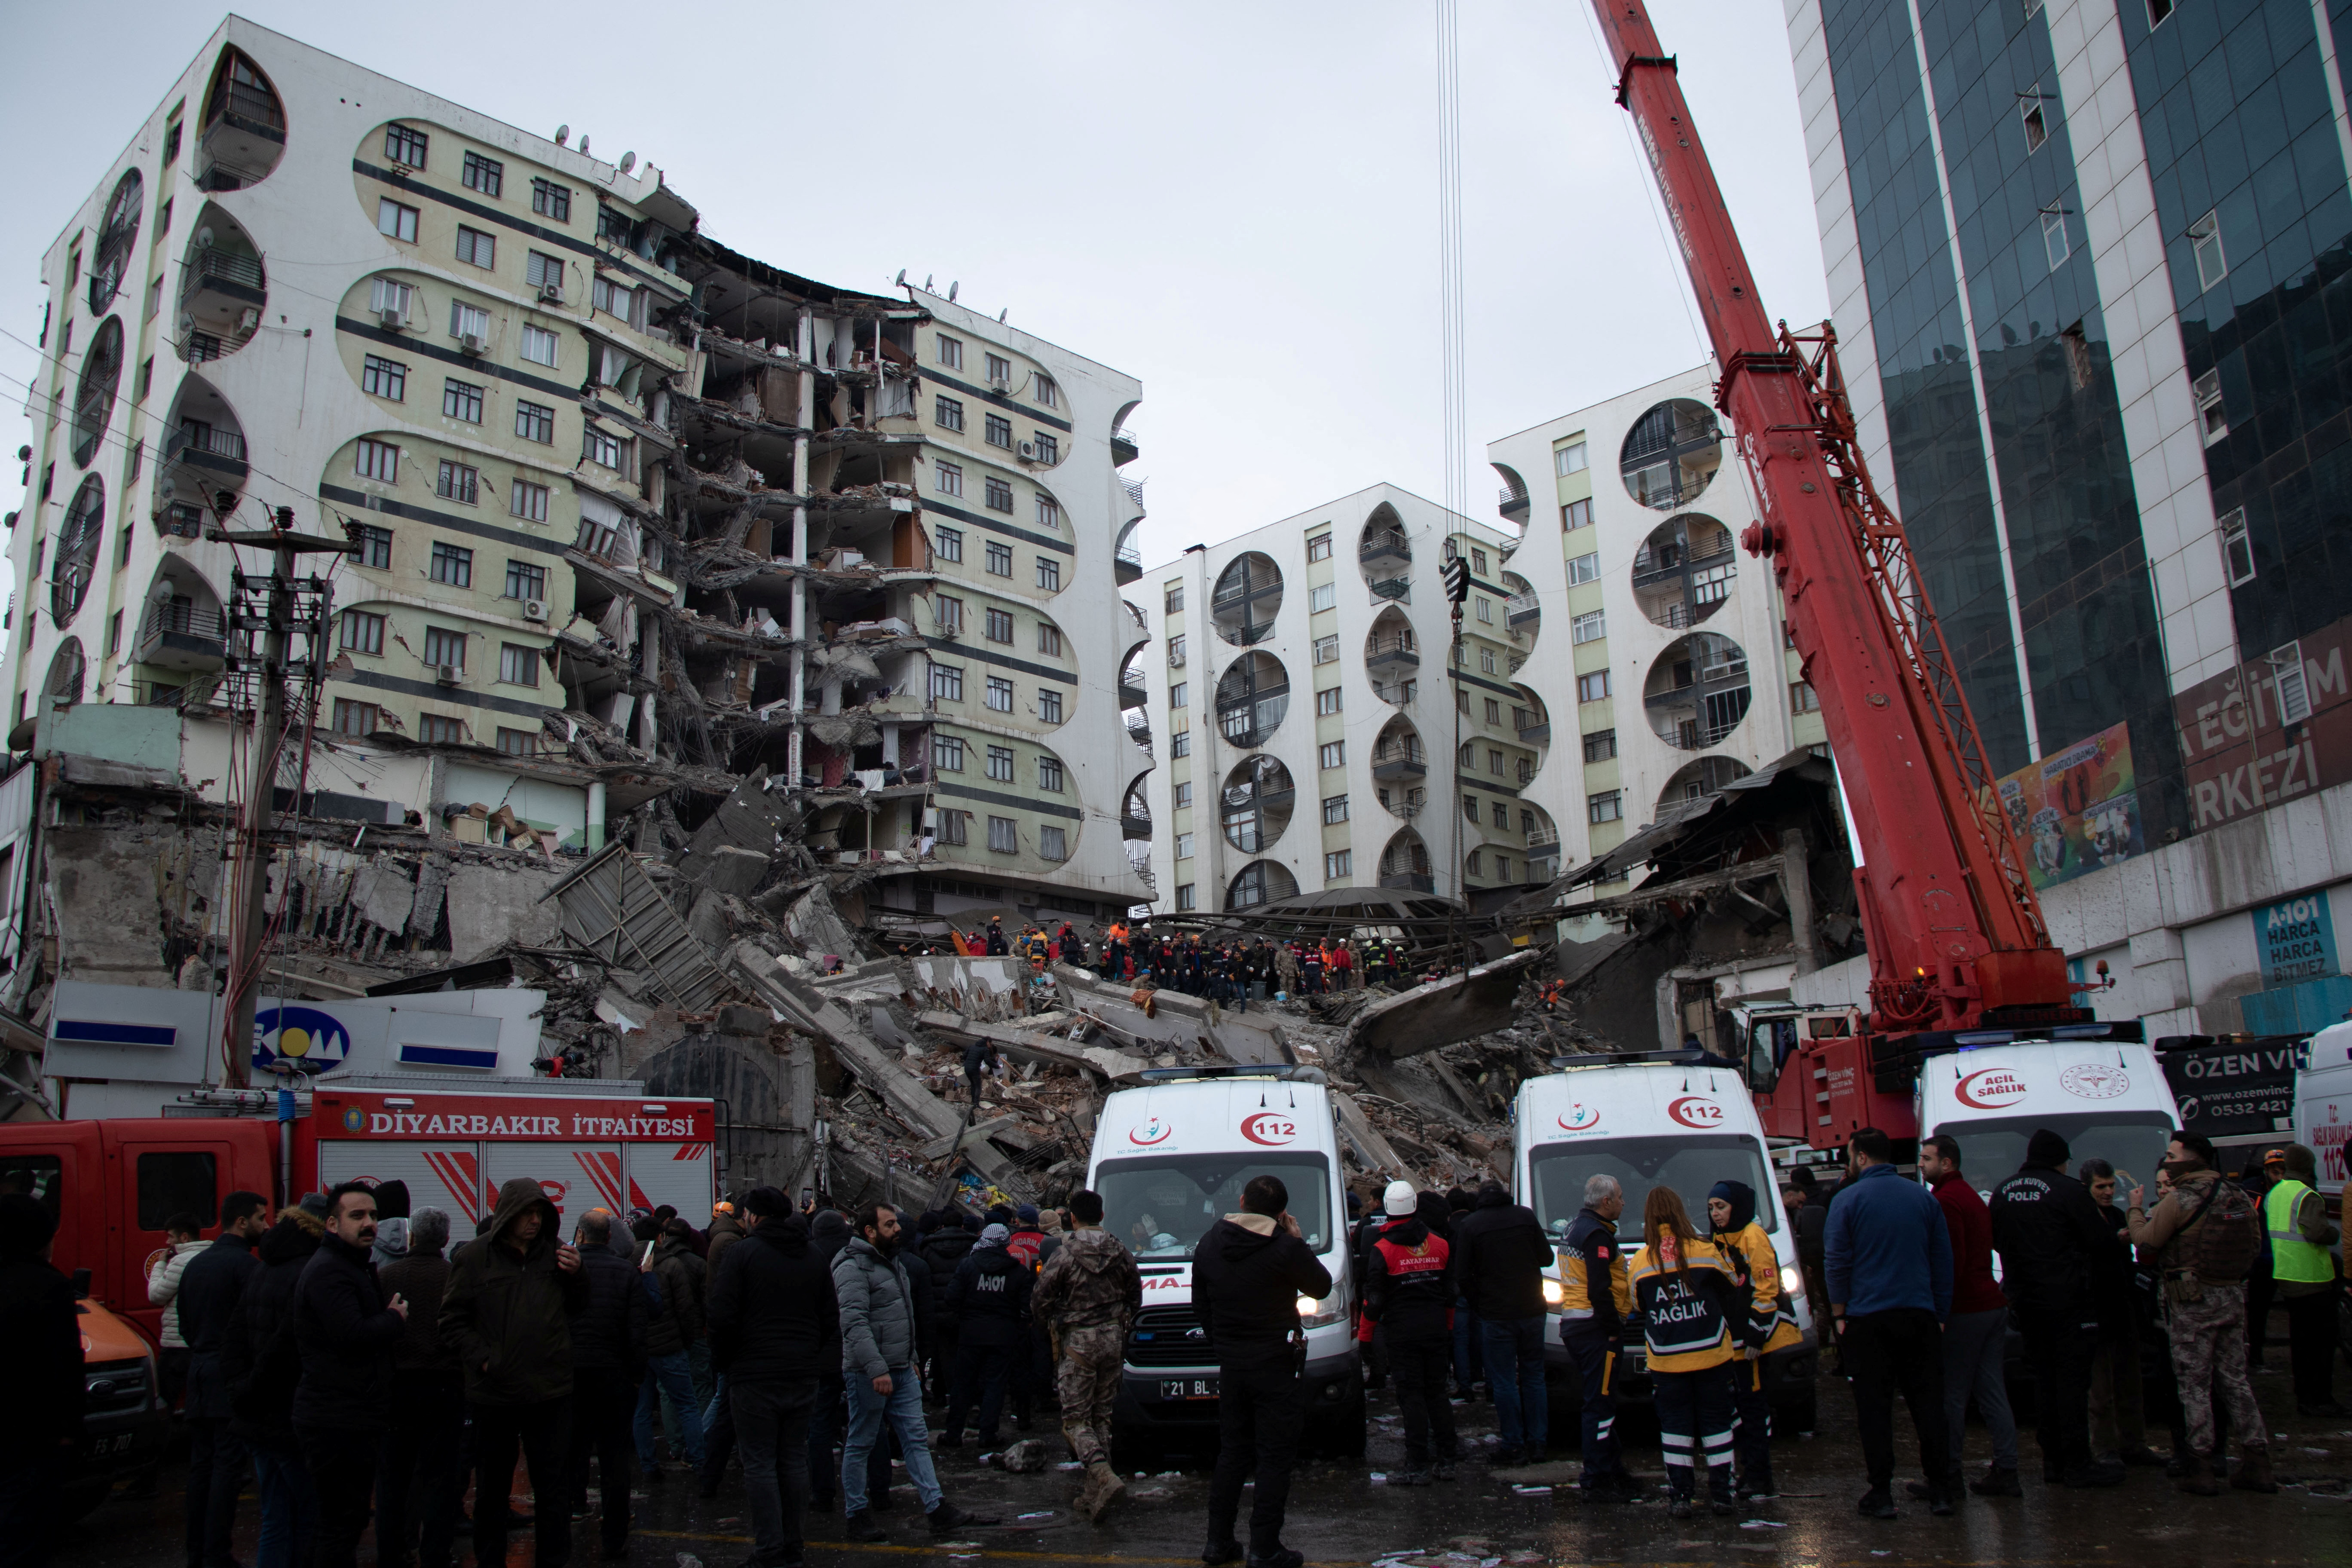 Los equipos de rescate buscan entre los escombros tras un terremoto en Diyarbakir, Turquía. Agencia de noticias Ihlas (IHA) vía REUTERS
